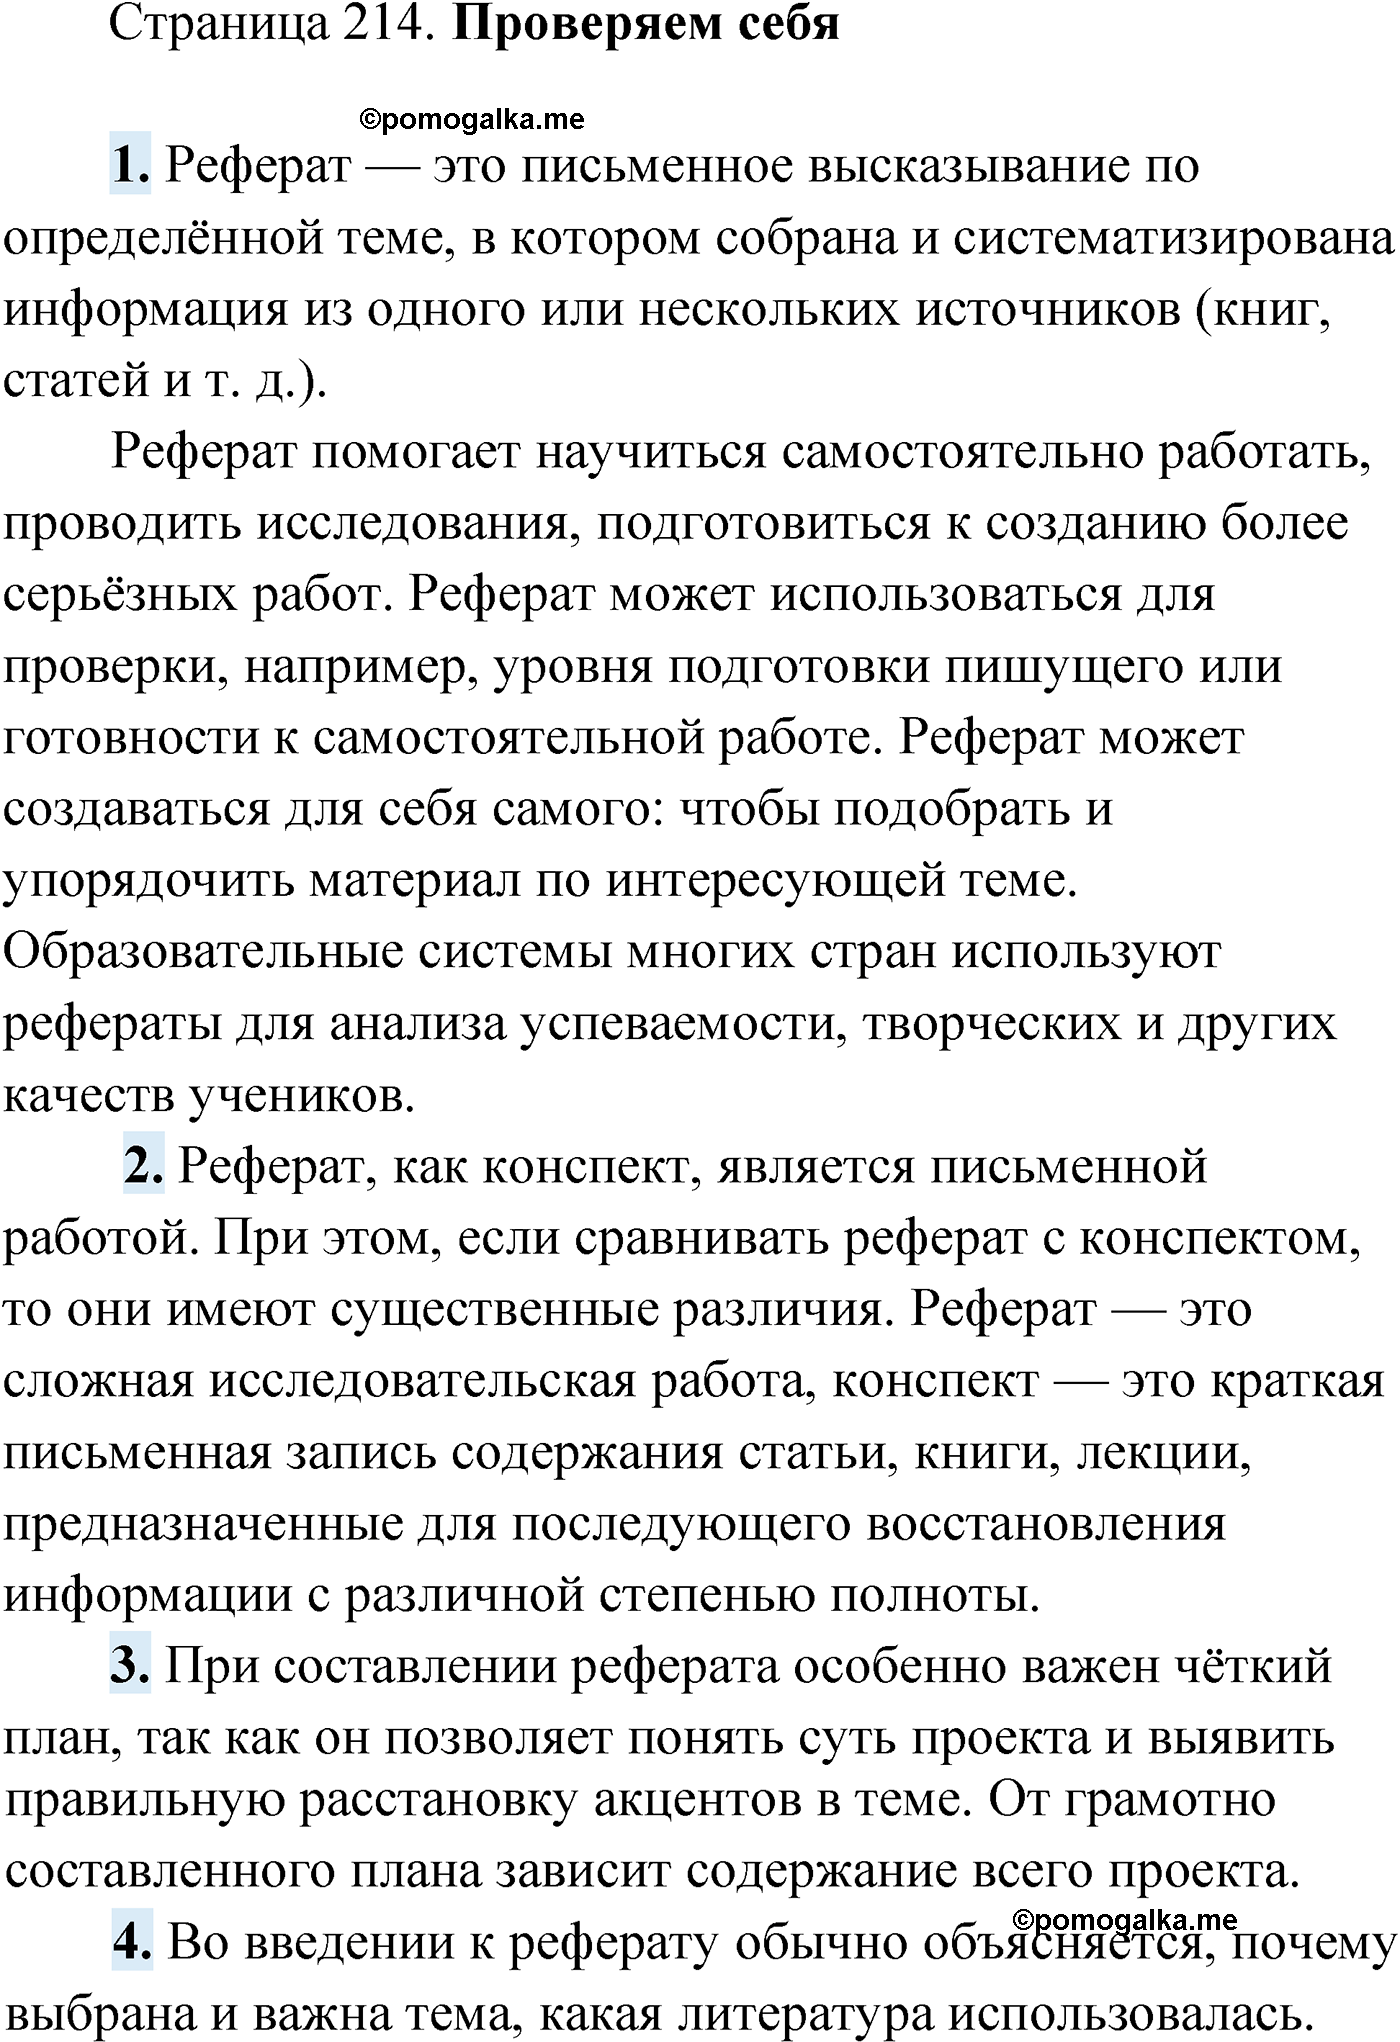 Проверь себя, Страница 214 русский язык 9 класс Мурина 2019 год